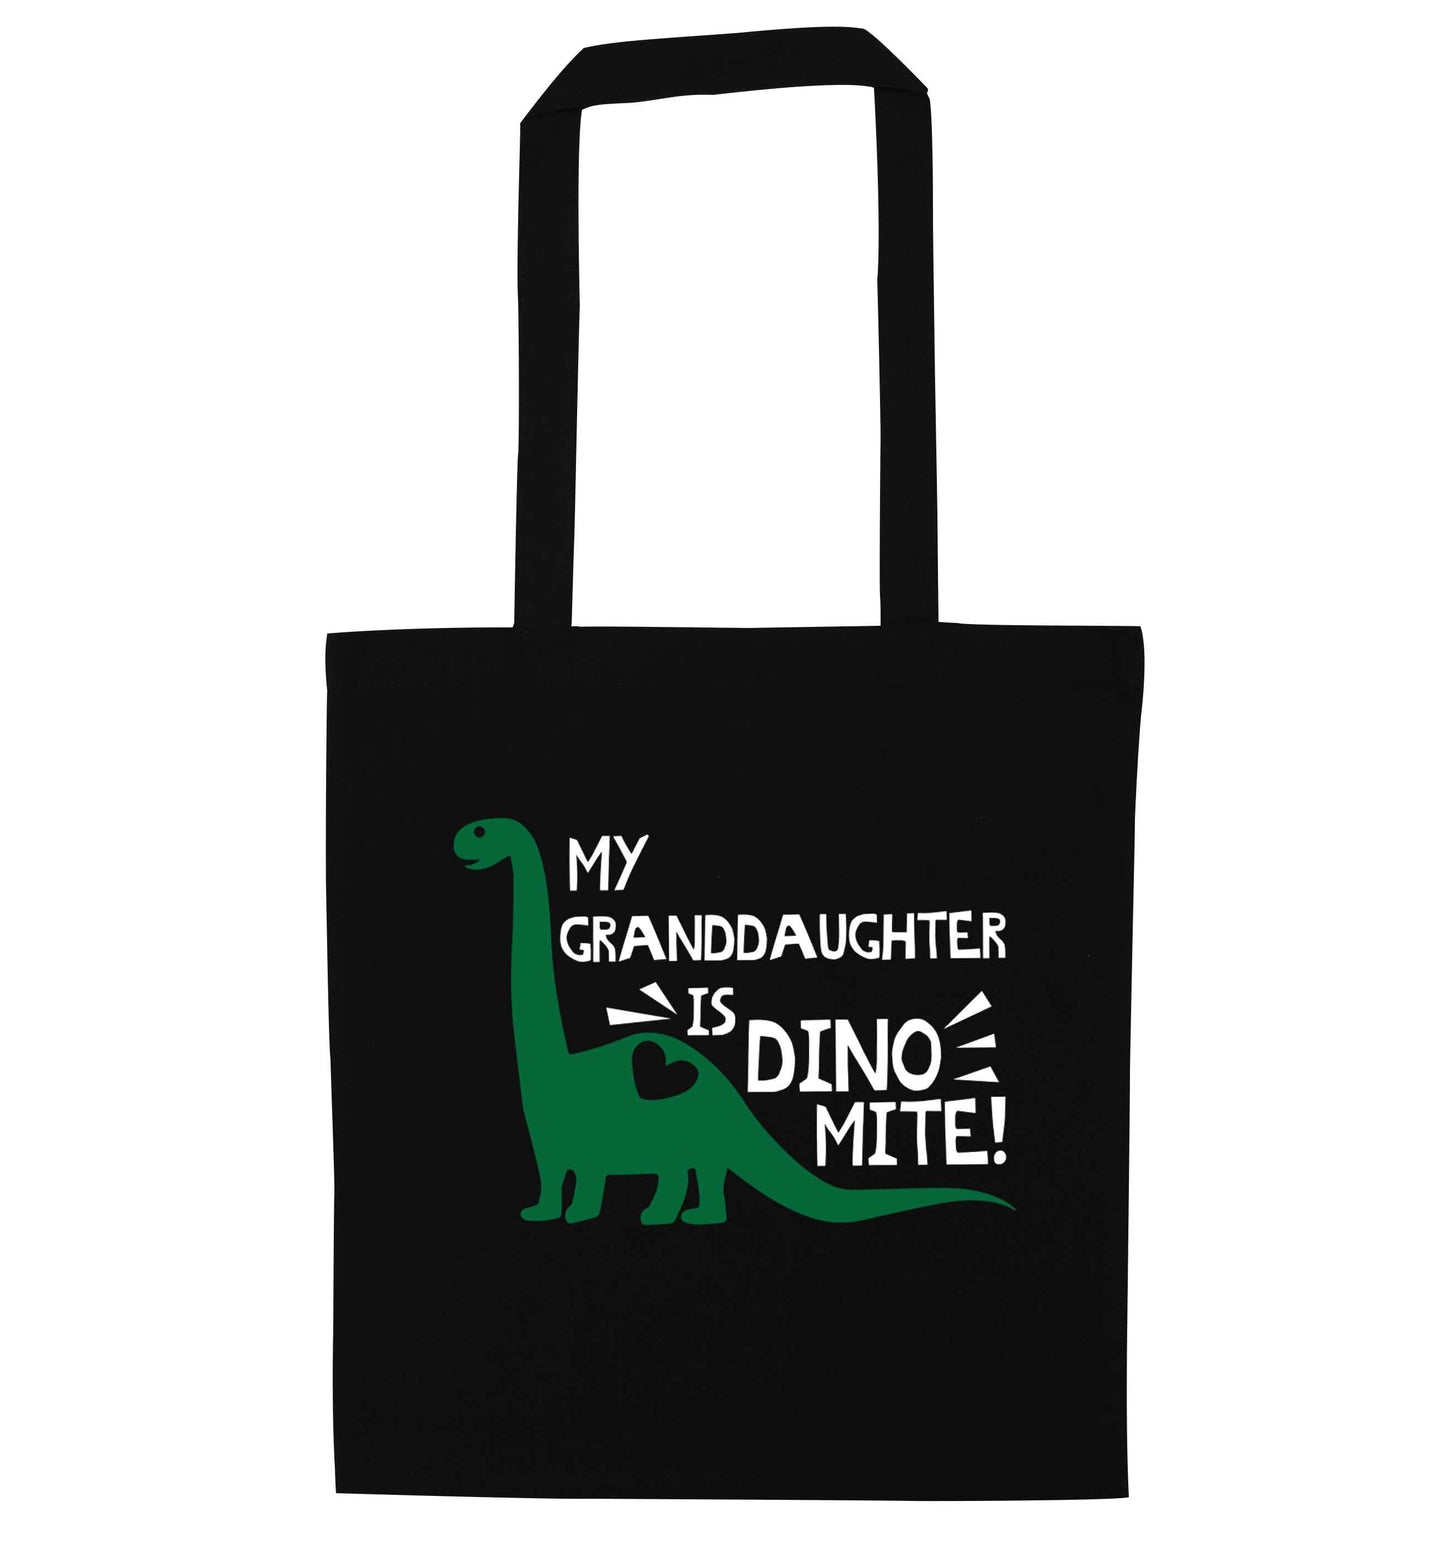 My granddaughter is dinomite! black tote bag